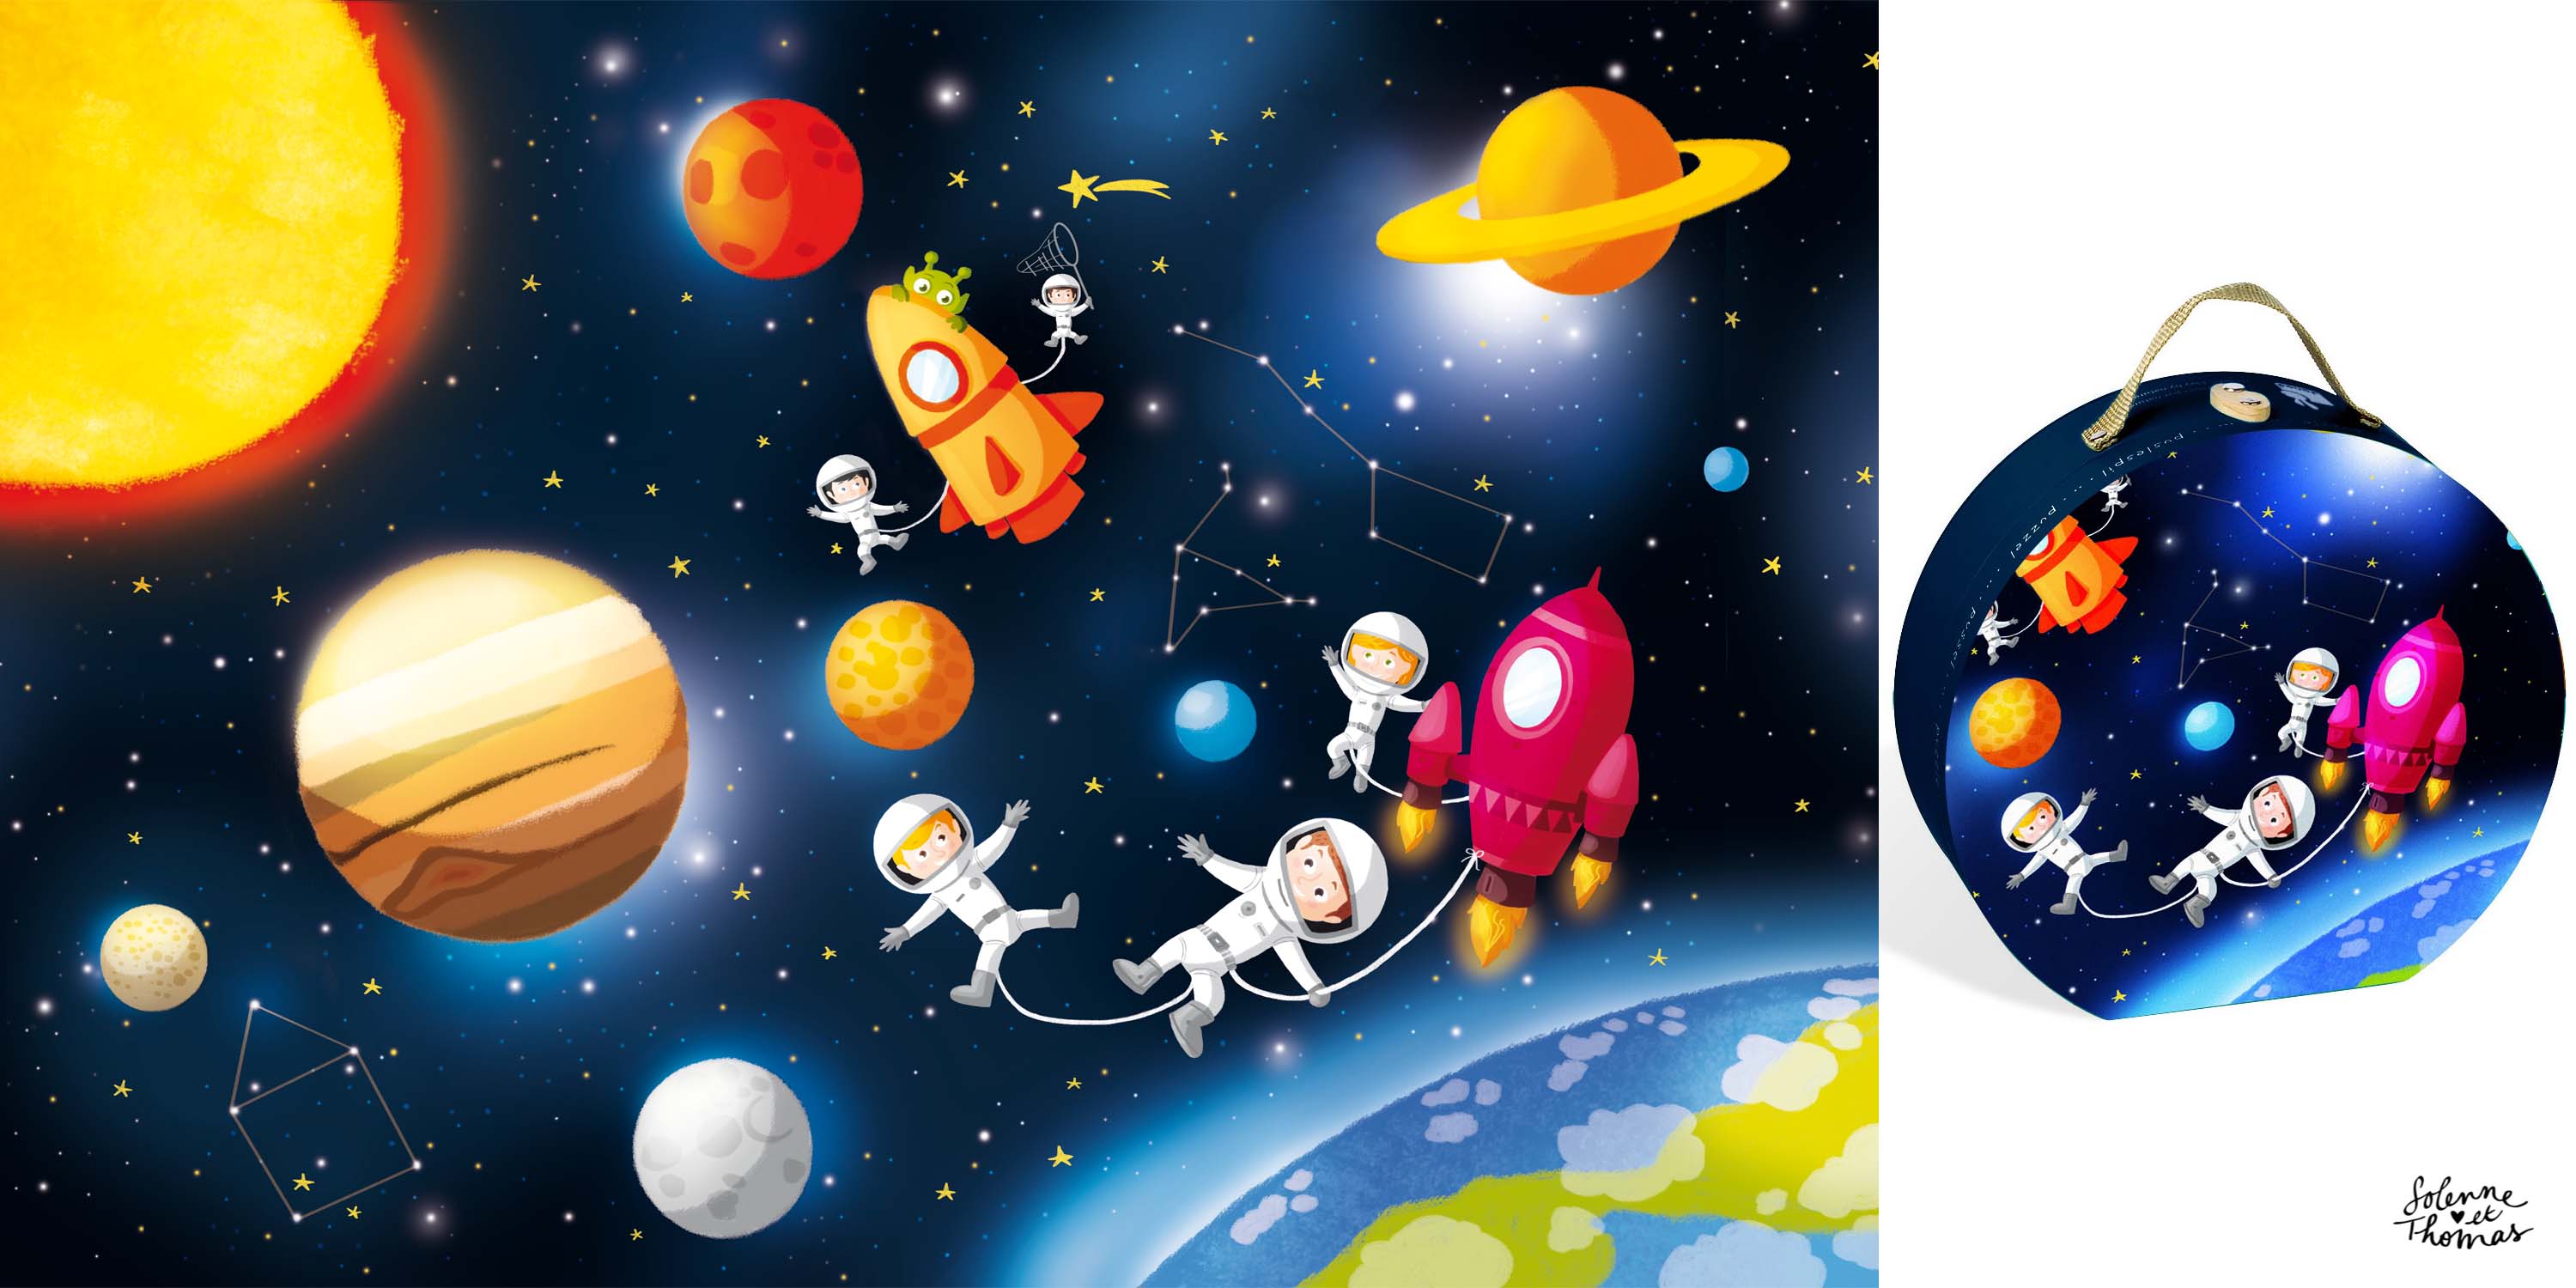 Тема космос для детей 4 лет. Космос для детей дошкольного возраста. Фон космос для детей дошкольного возраста. Космос планеты для детей дошкольного возраста. Детям о космосе.